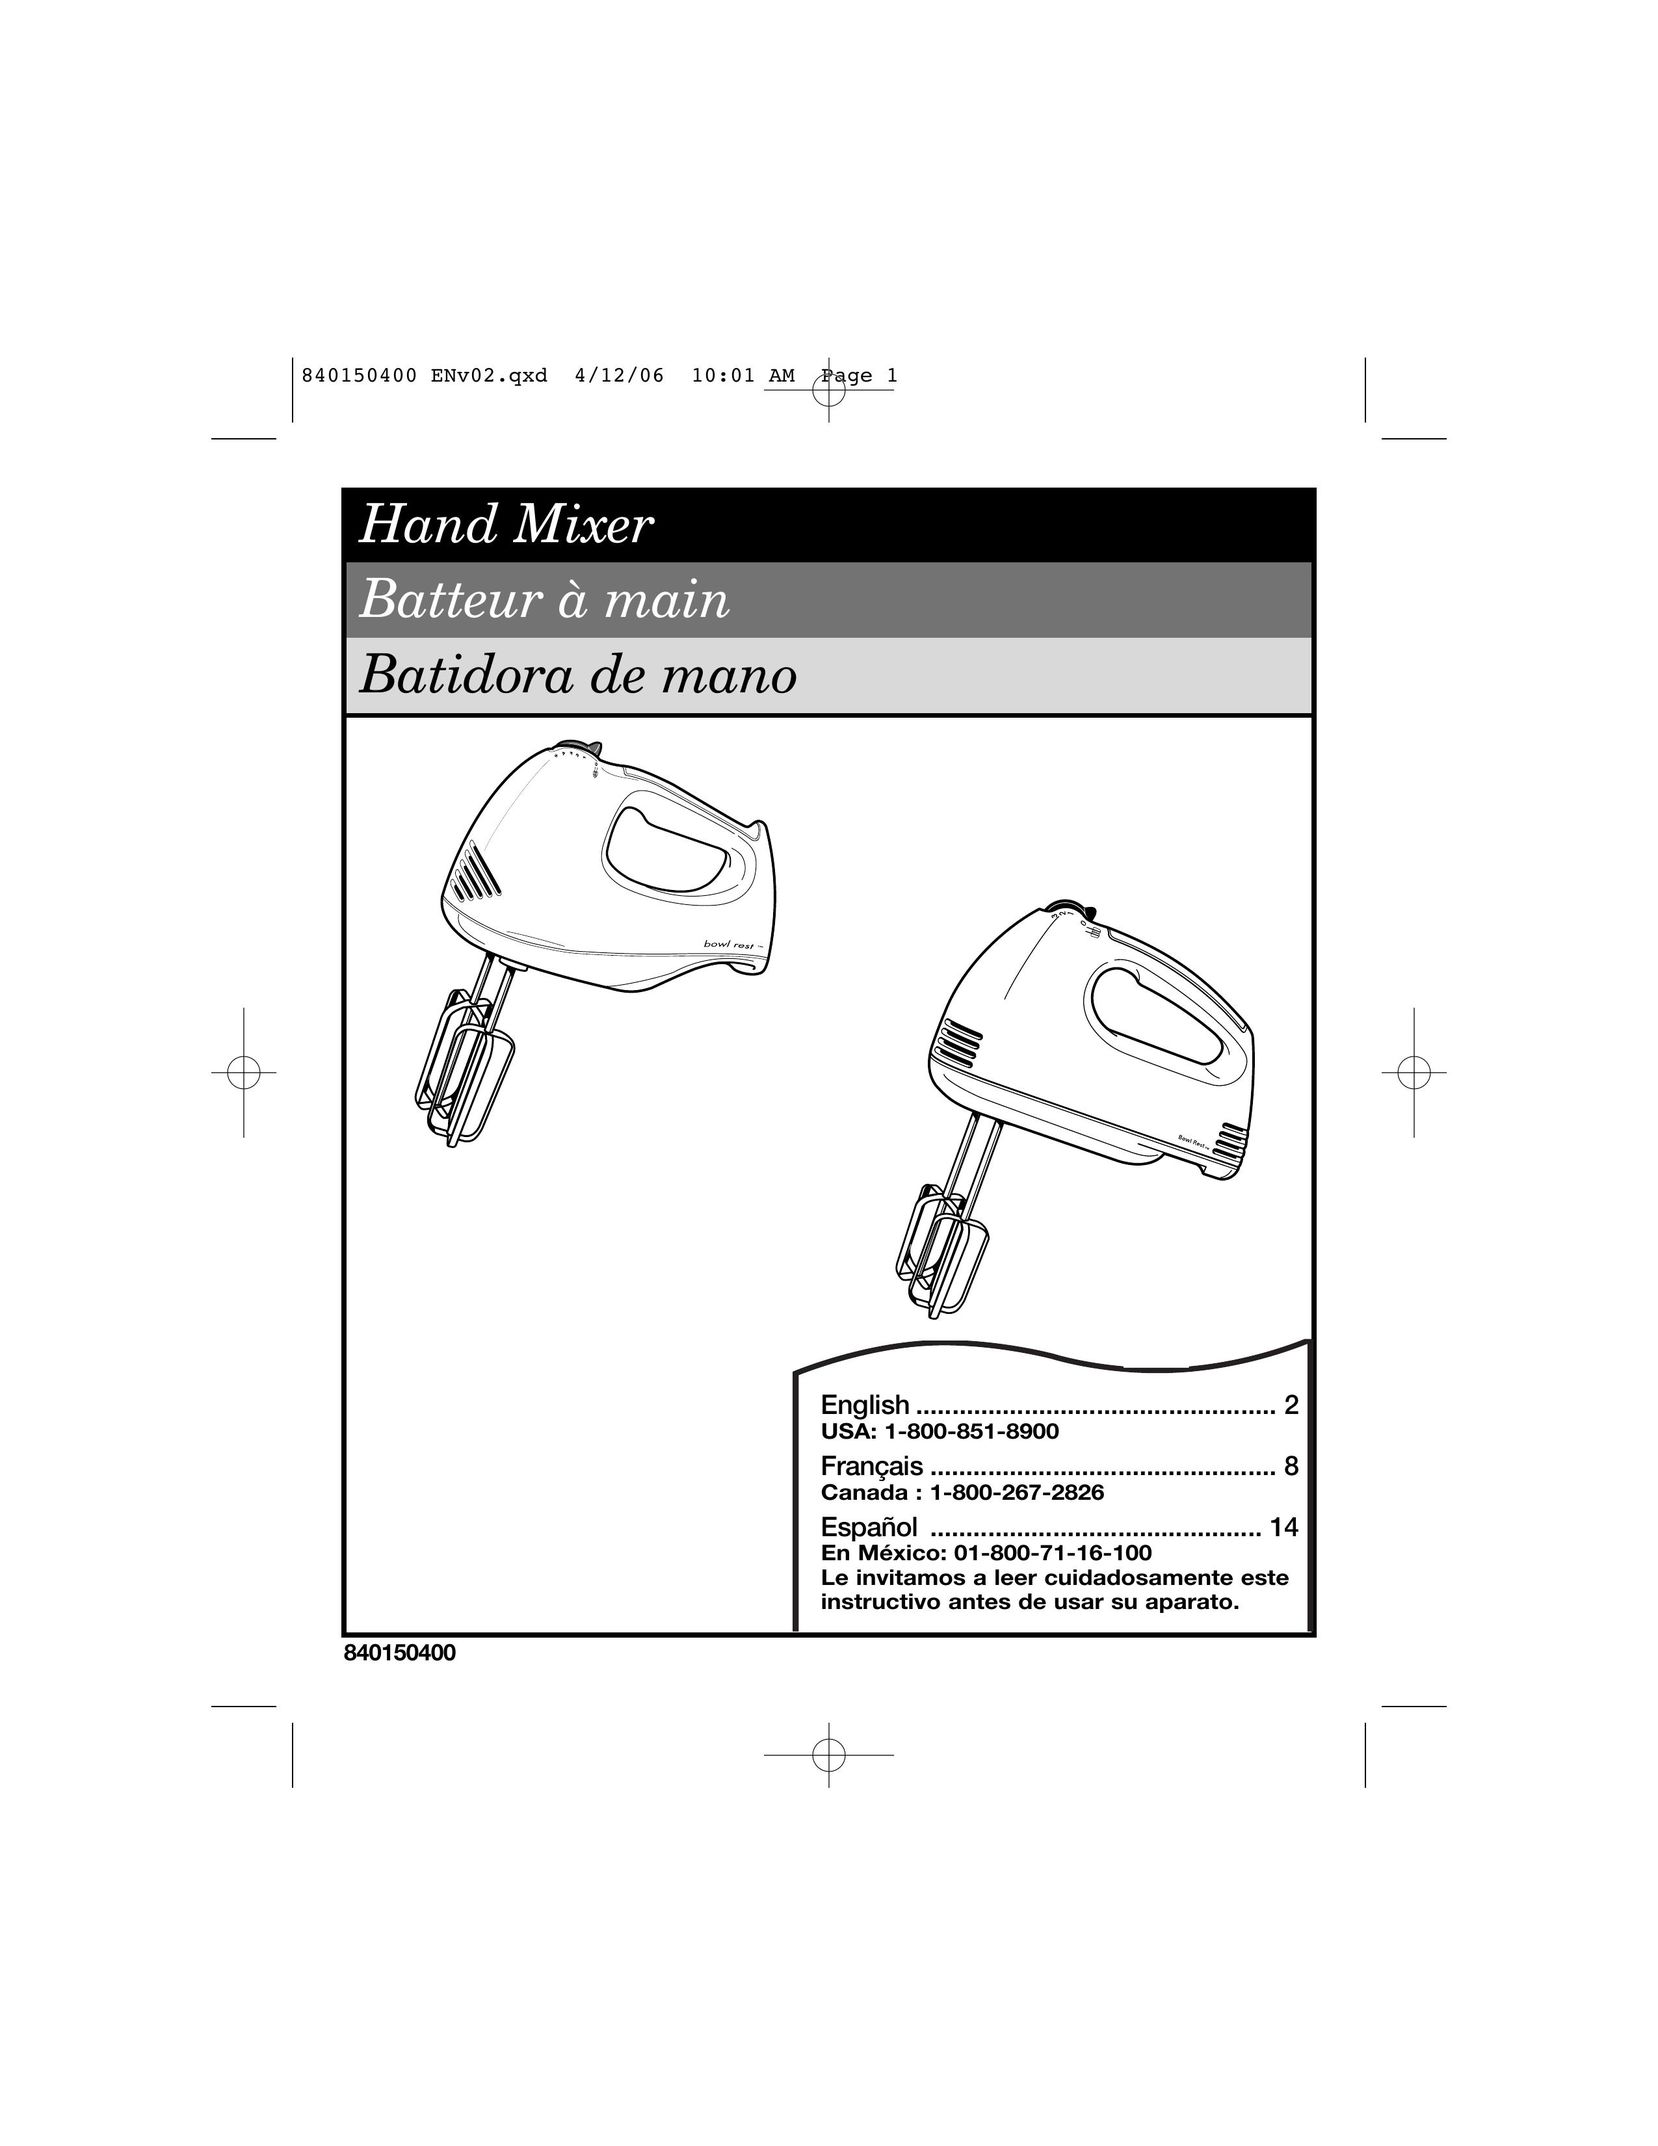 Hamilton Beach 62588 Mixer User Manual